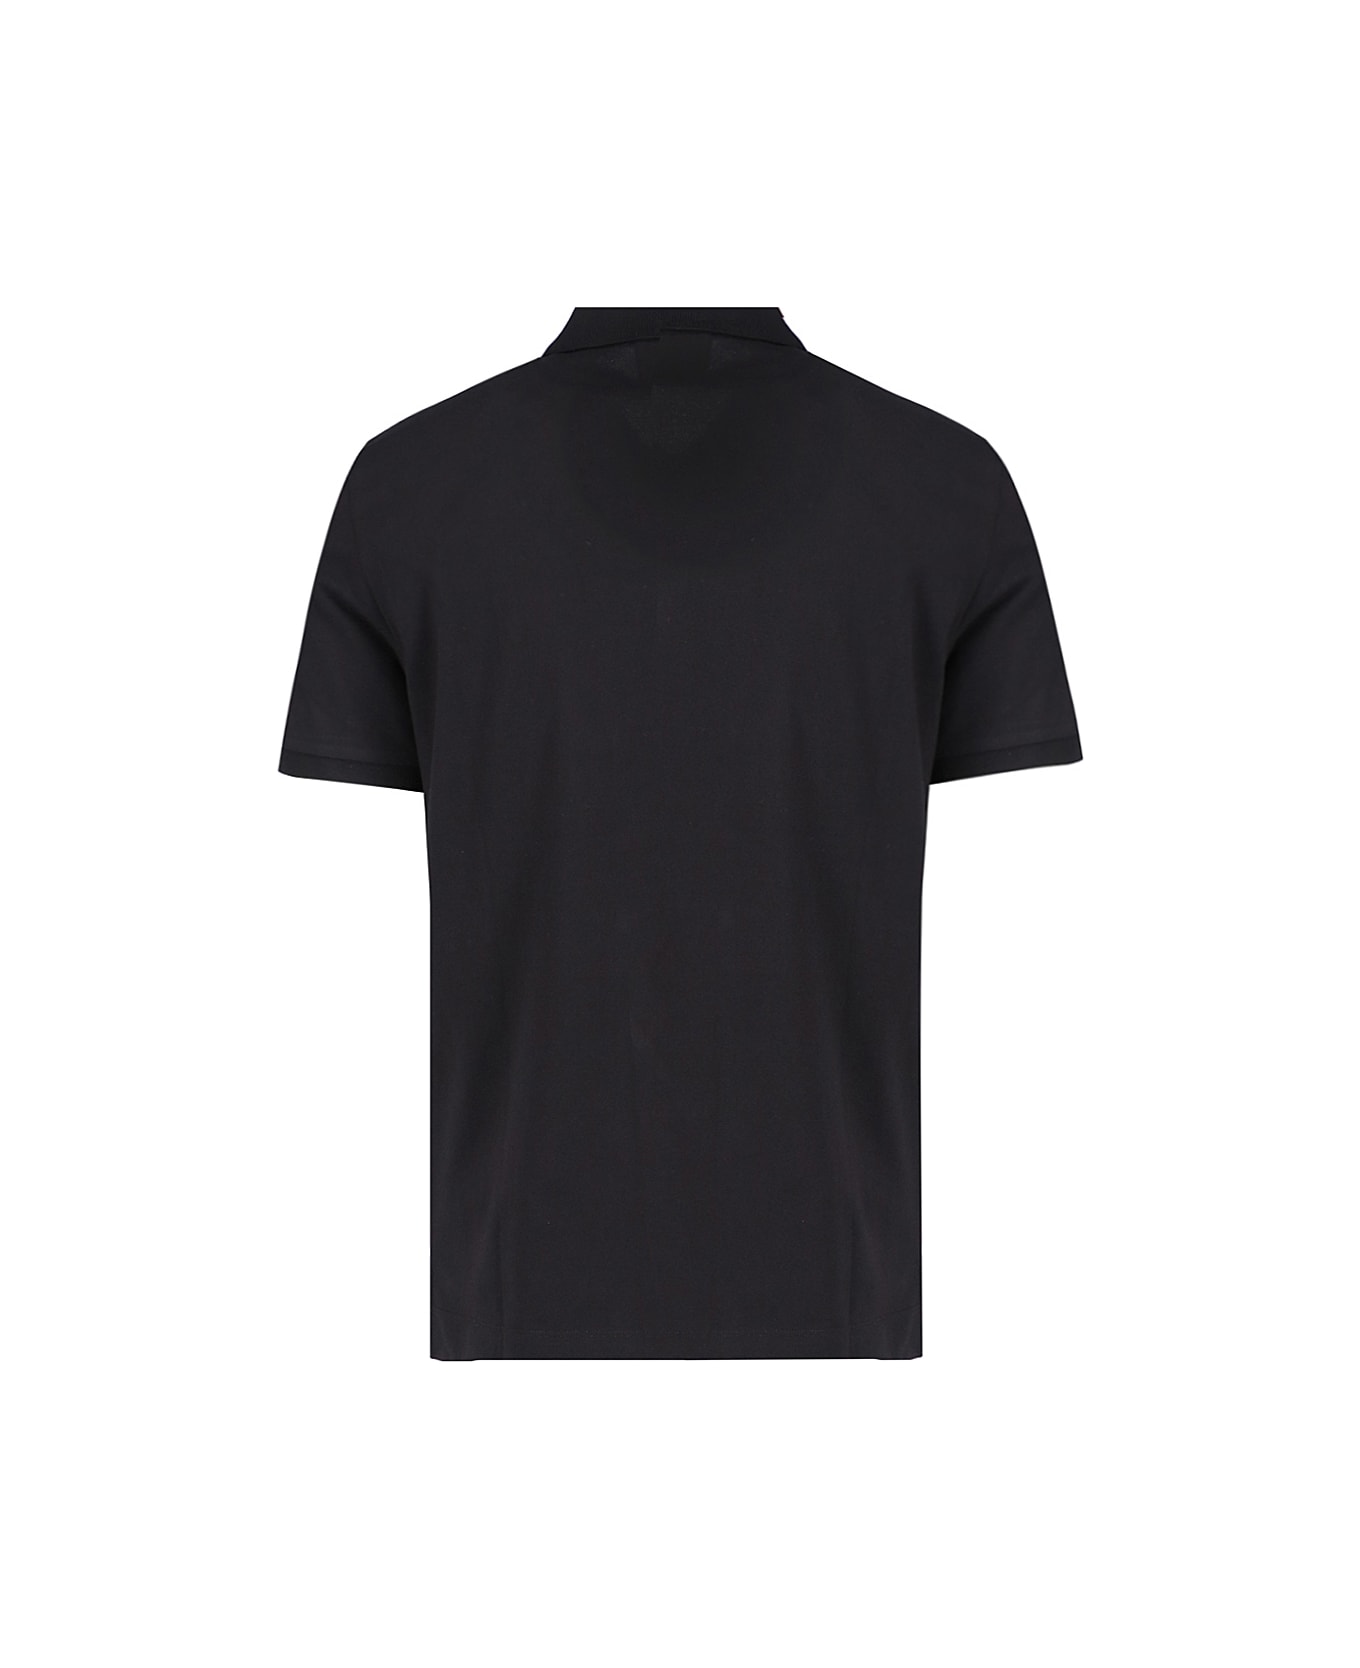 C.P. Company 'stretch Piquet' Slim Polo Shirt - Black